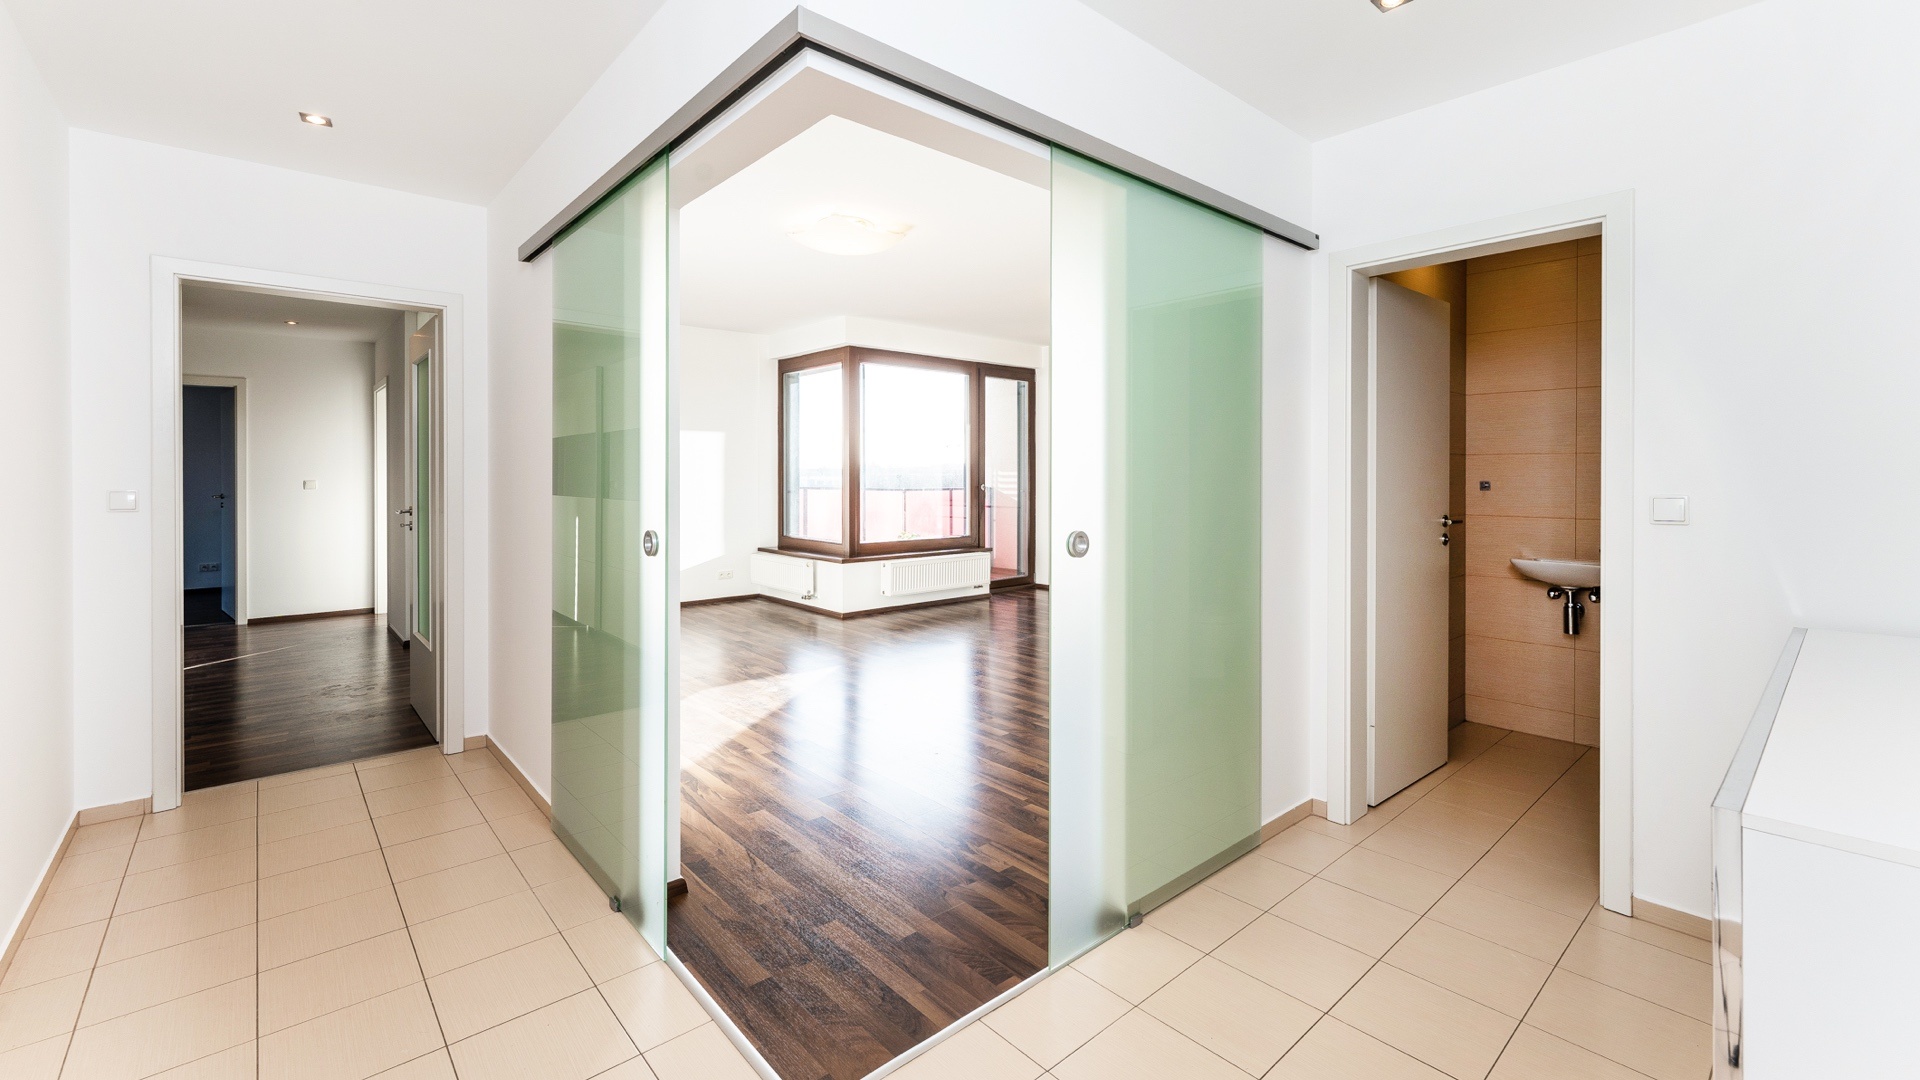 Krásný prostorný byt 3+kk k pronájmu, 106 m2, terasa, zimní zahrada, parkování, Praha 5 - Stodůlky